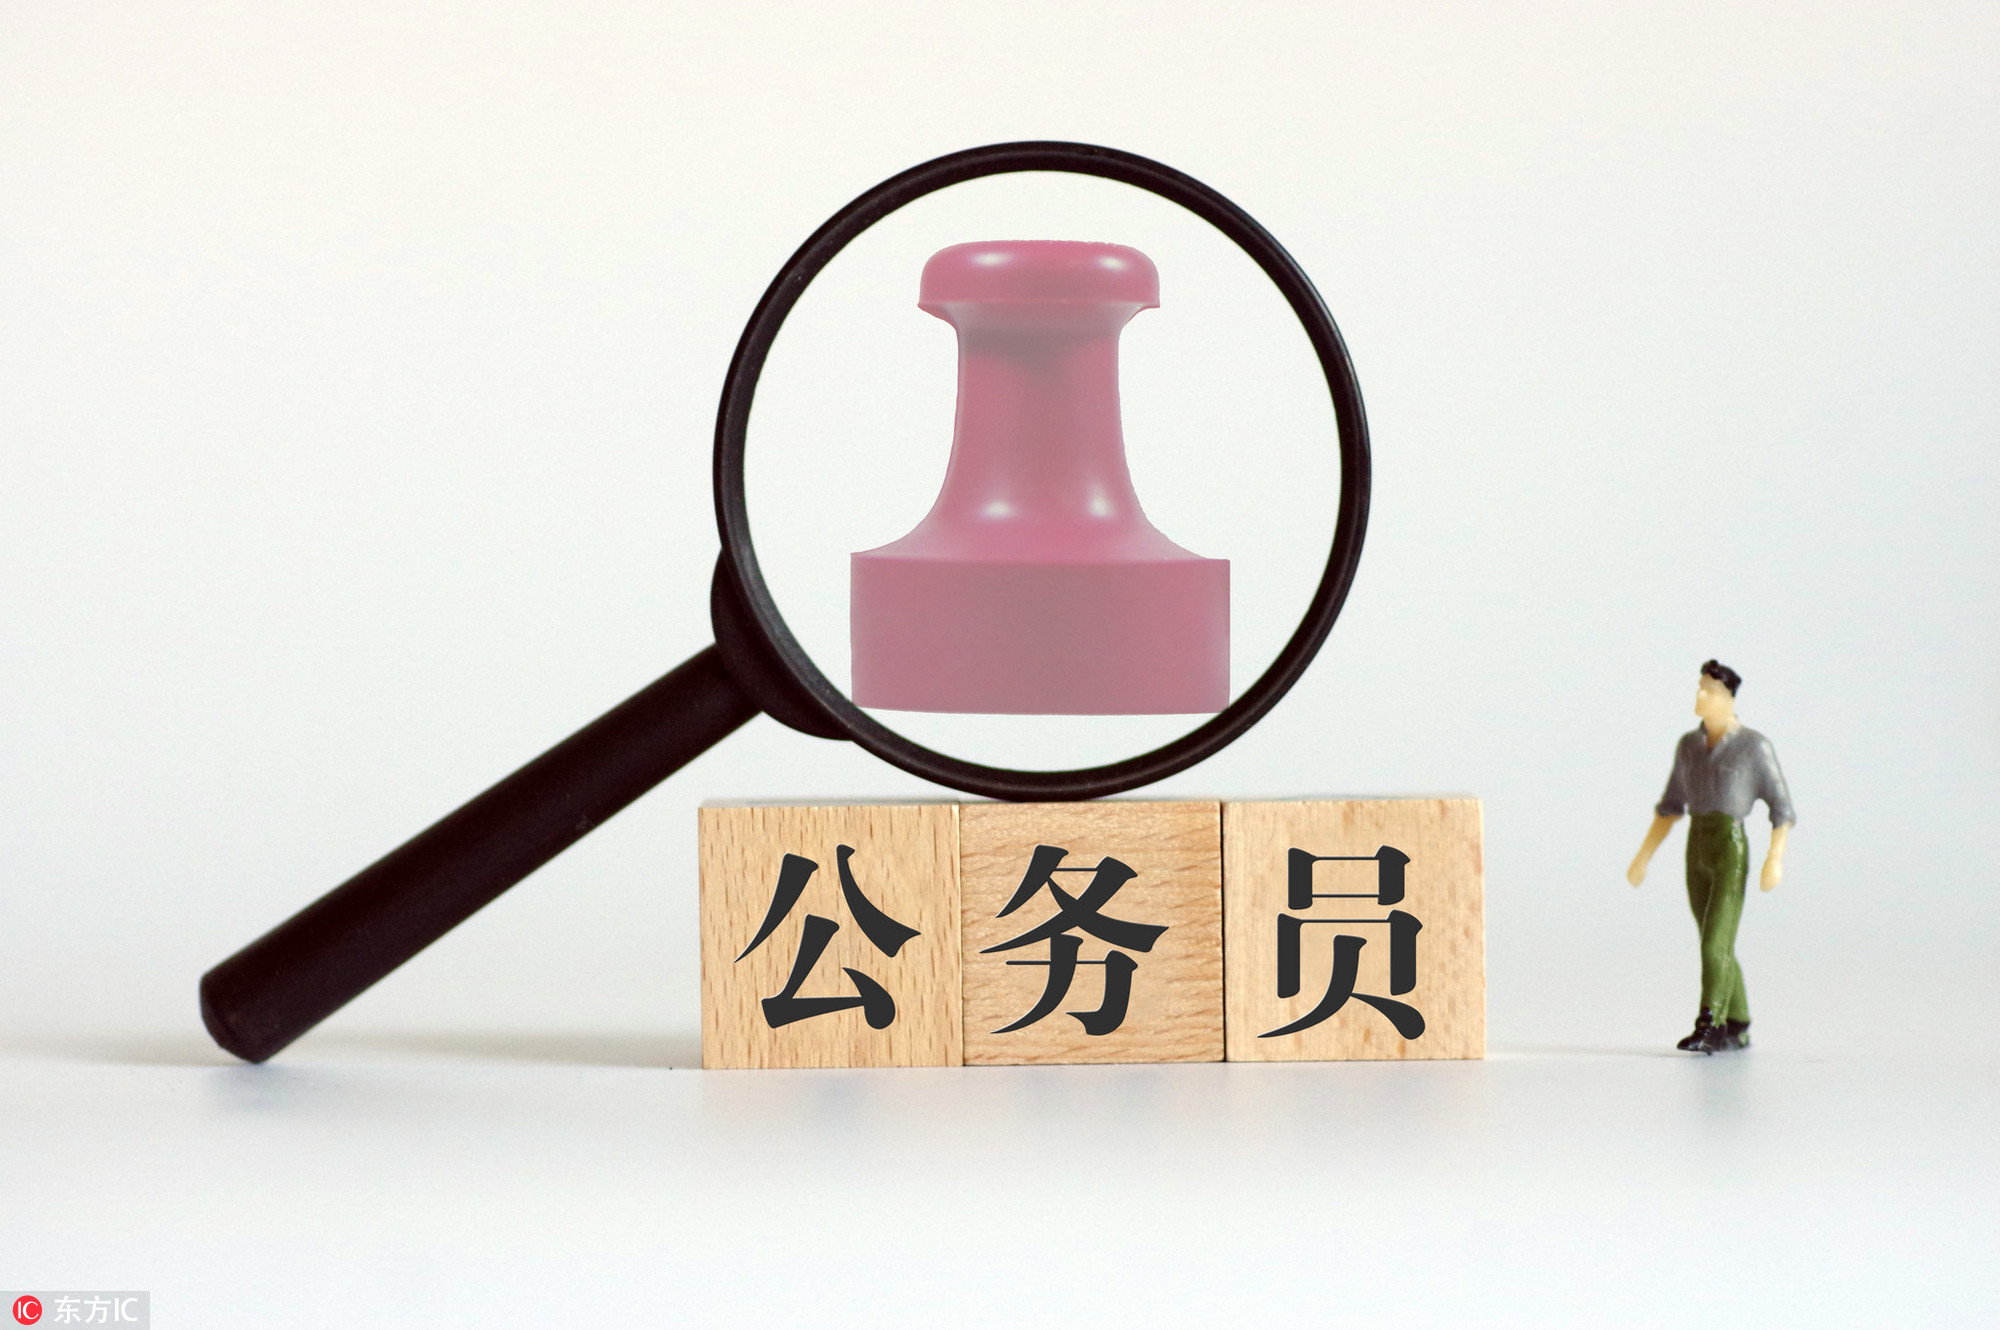 天津公务员考试试卷雷同案开庭:考场监控已无法调取